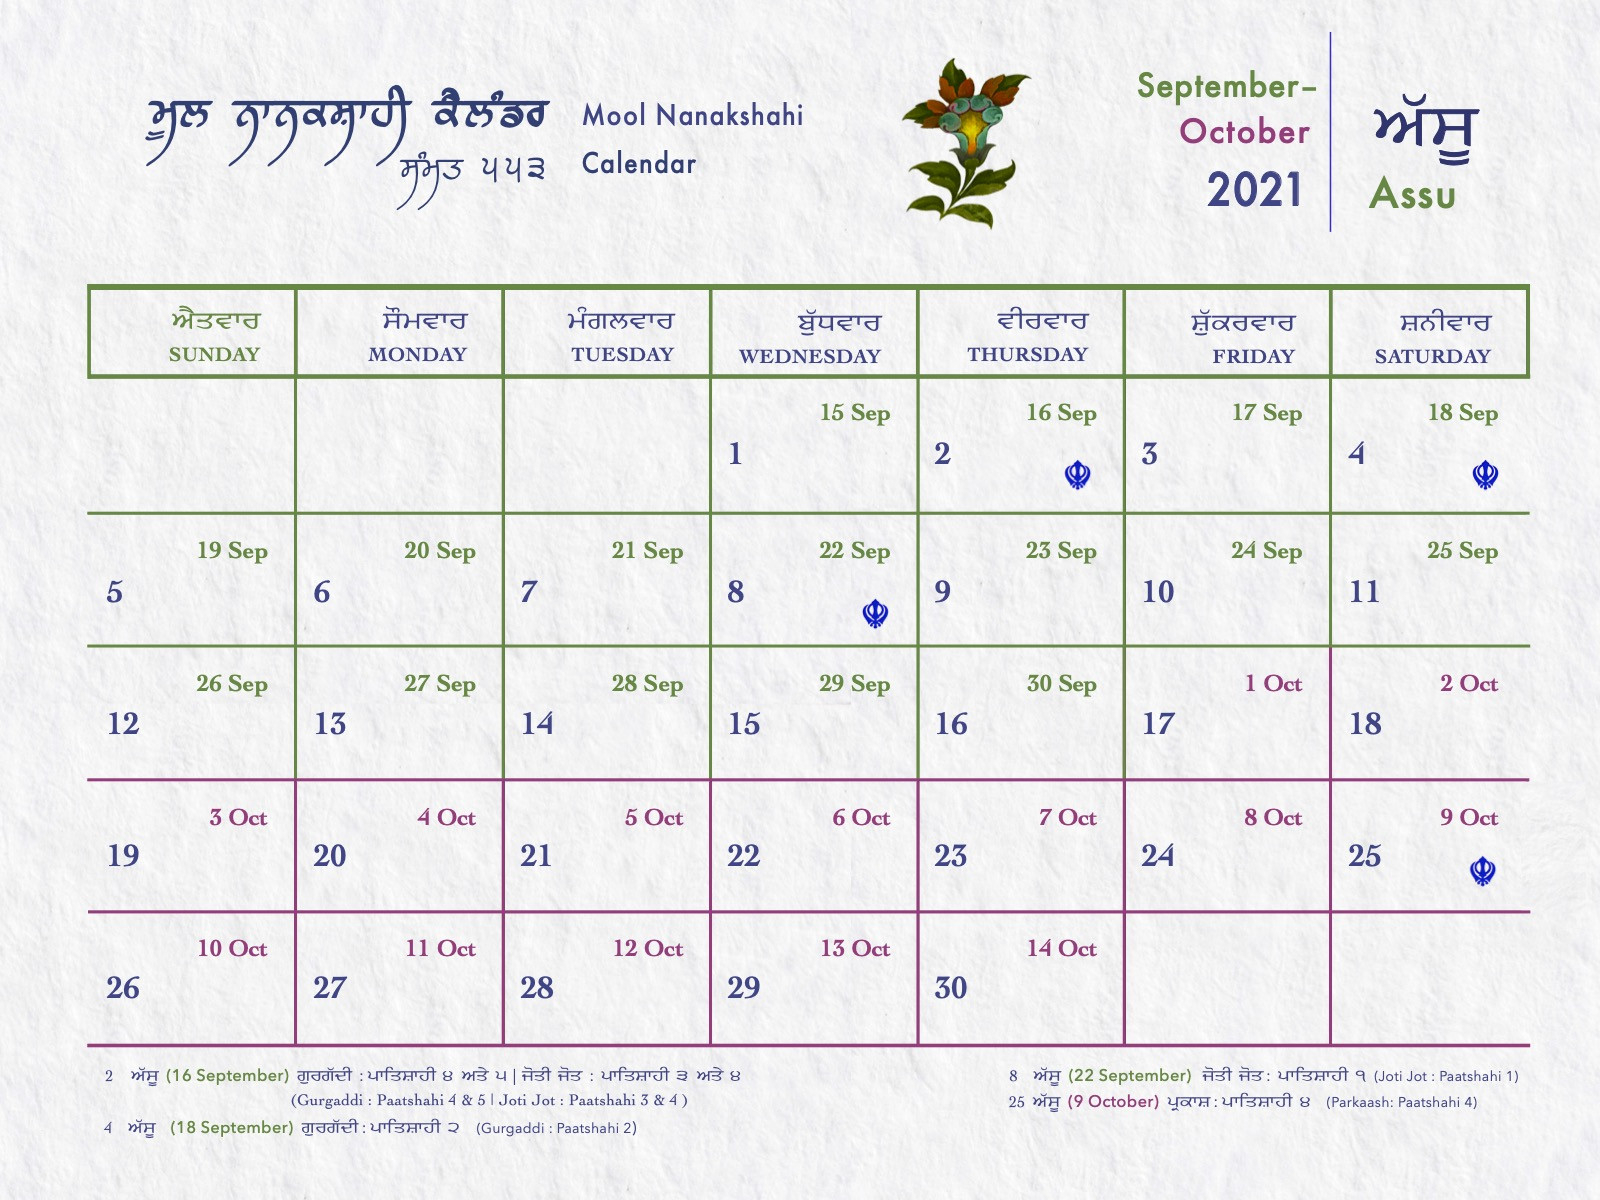 Nanakshahi Sammat 553 Mool Nanakshahi Calendar 2021-2022 - Mool-Nanakshahi Calendar 2022 Pdf Download